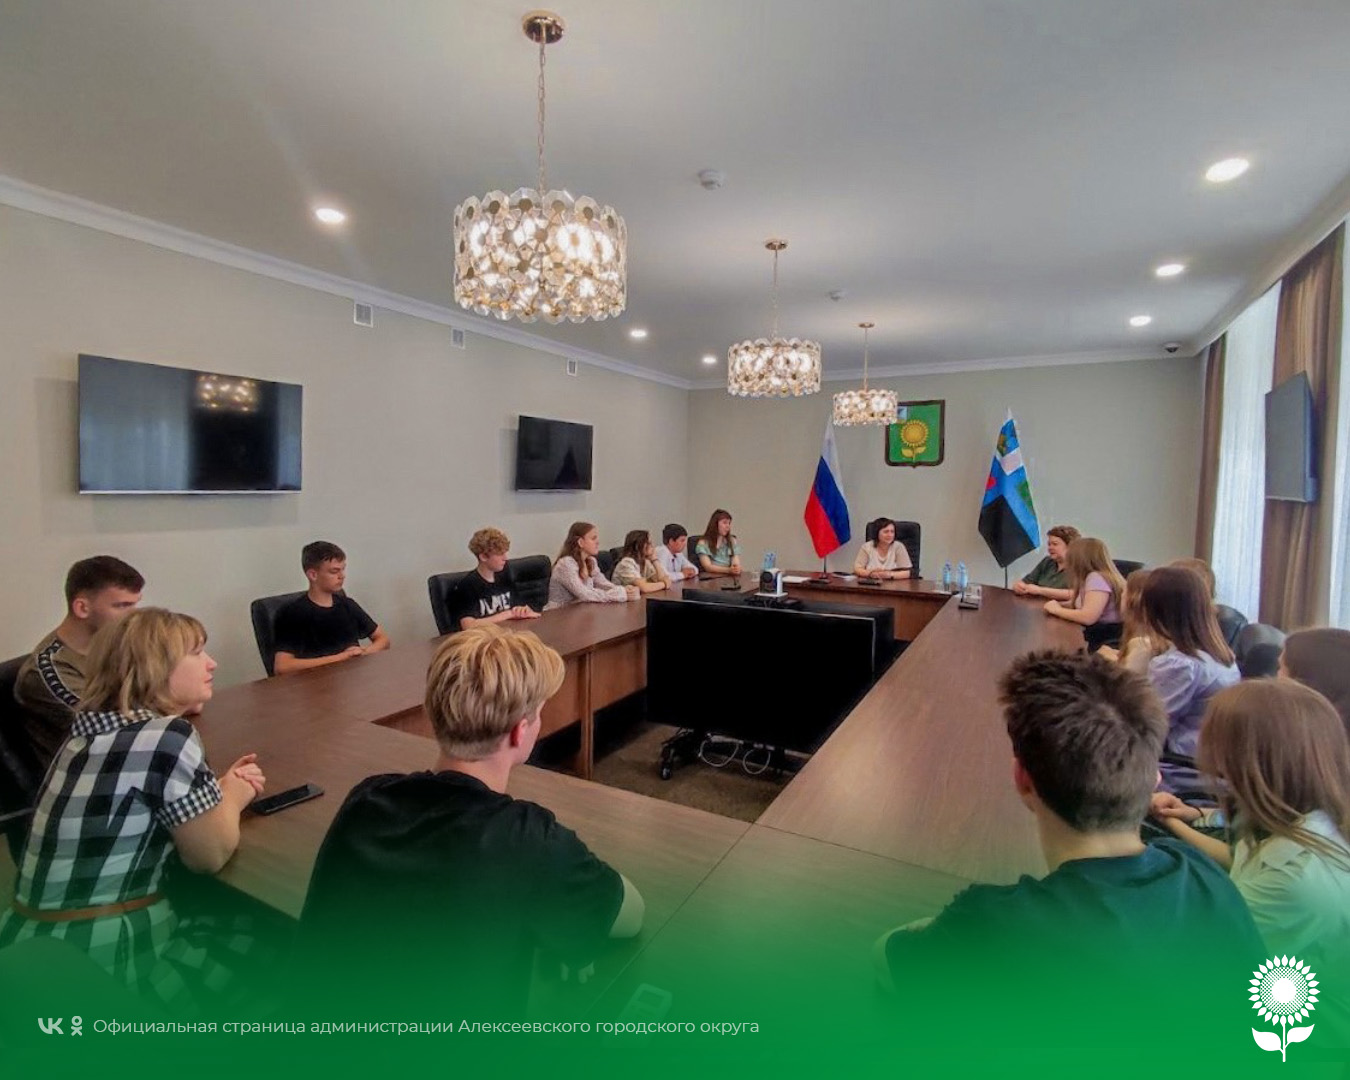 Команды КВН Алексеевского городского округа встретились с первым заместителем главы администрации Алексеевского городского округа Светланой Васильевной Халеевой.